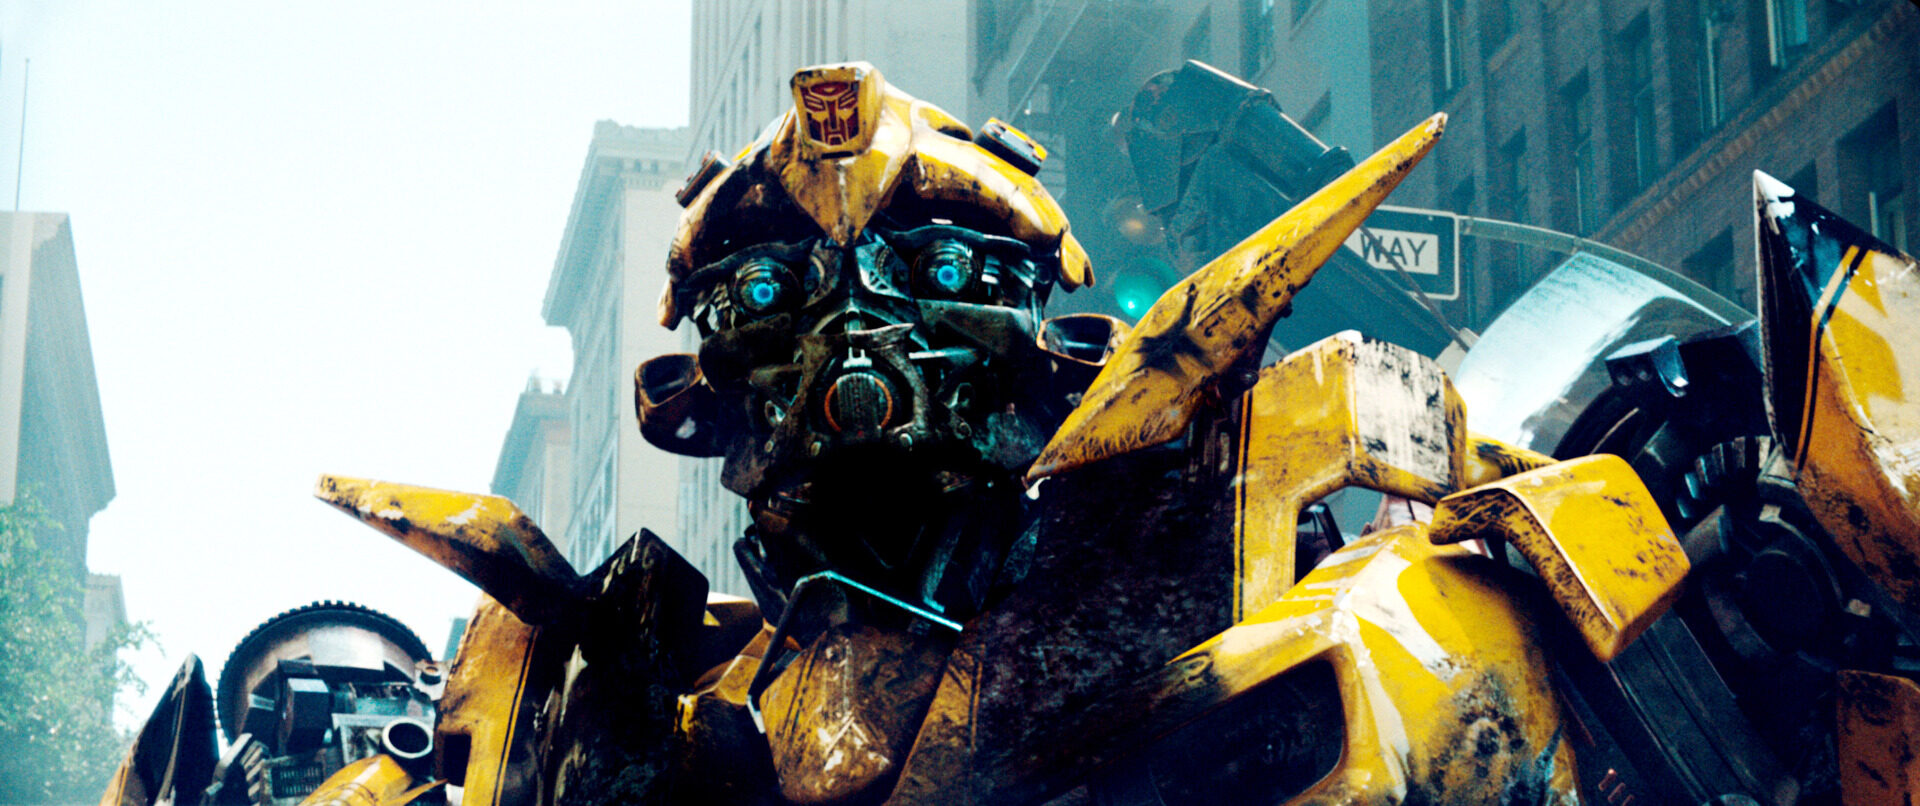 Melhores do Mundo - Transformers Movie transformers 71312 1920 806 9531085